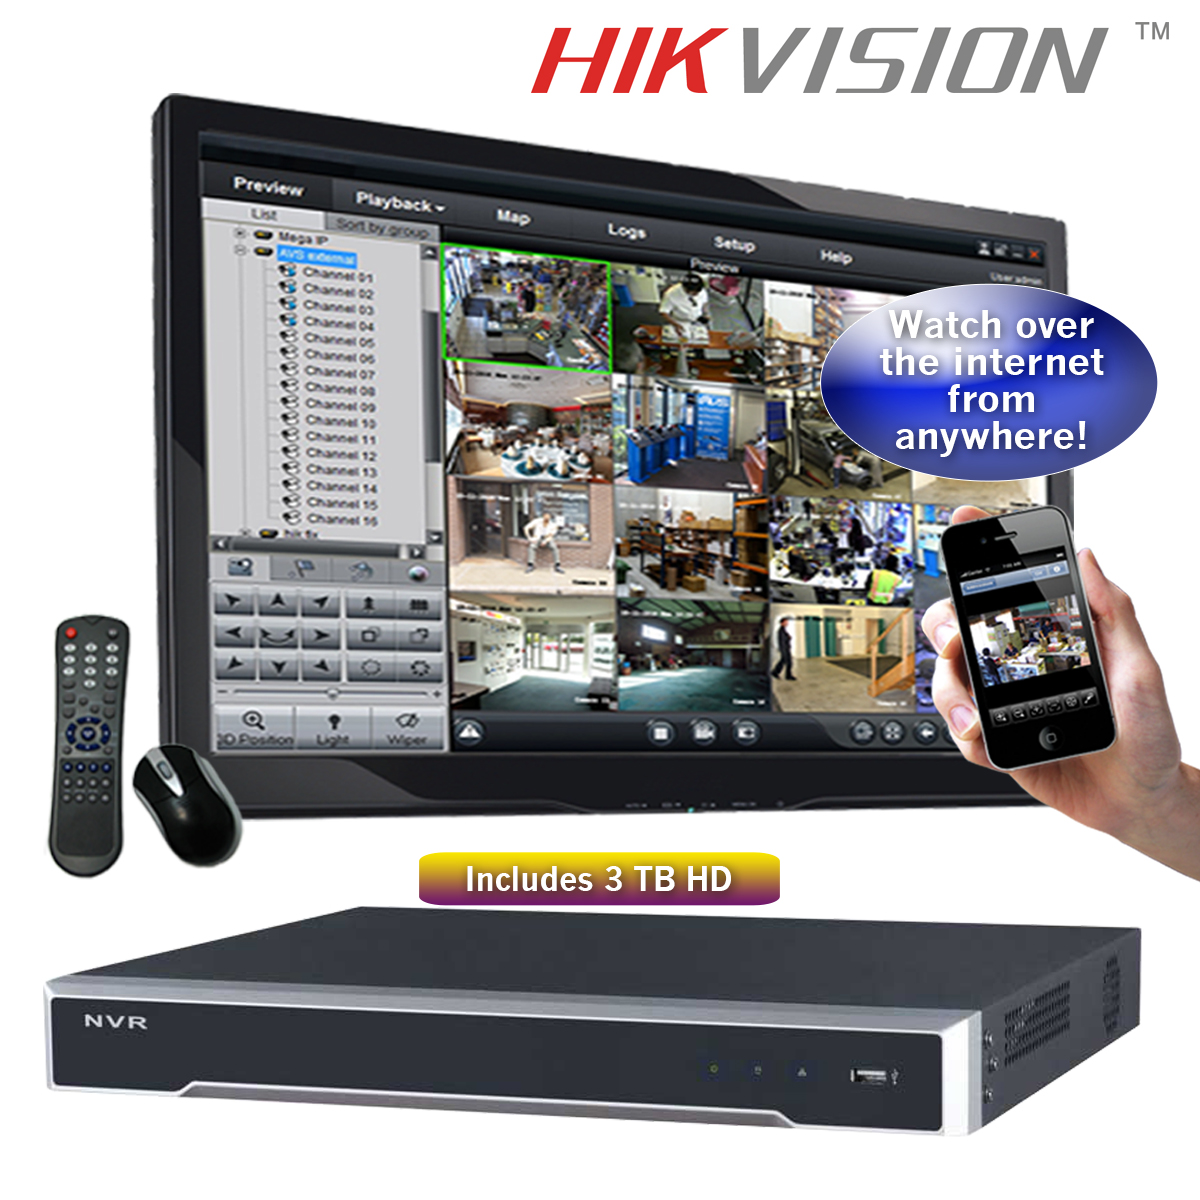 hikvision nvr 8 channel setup